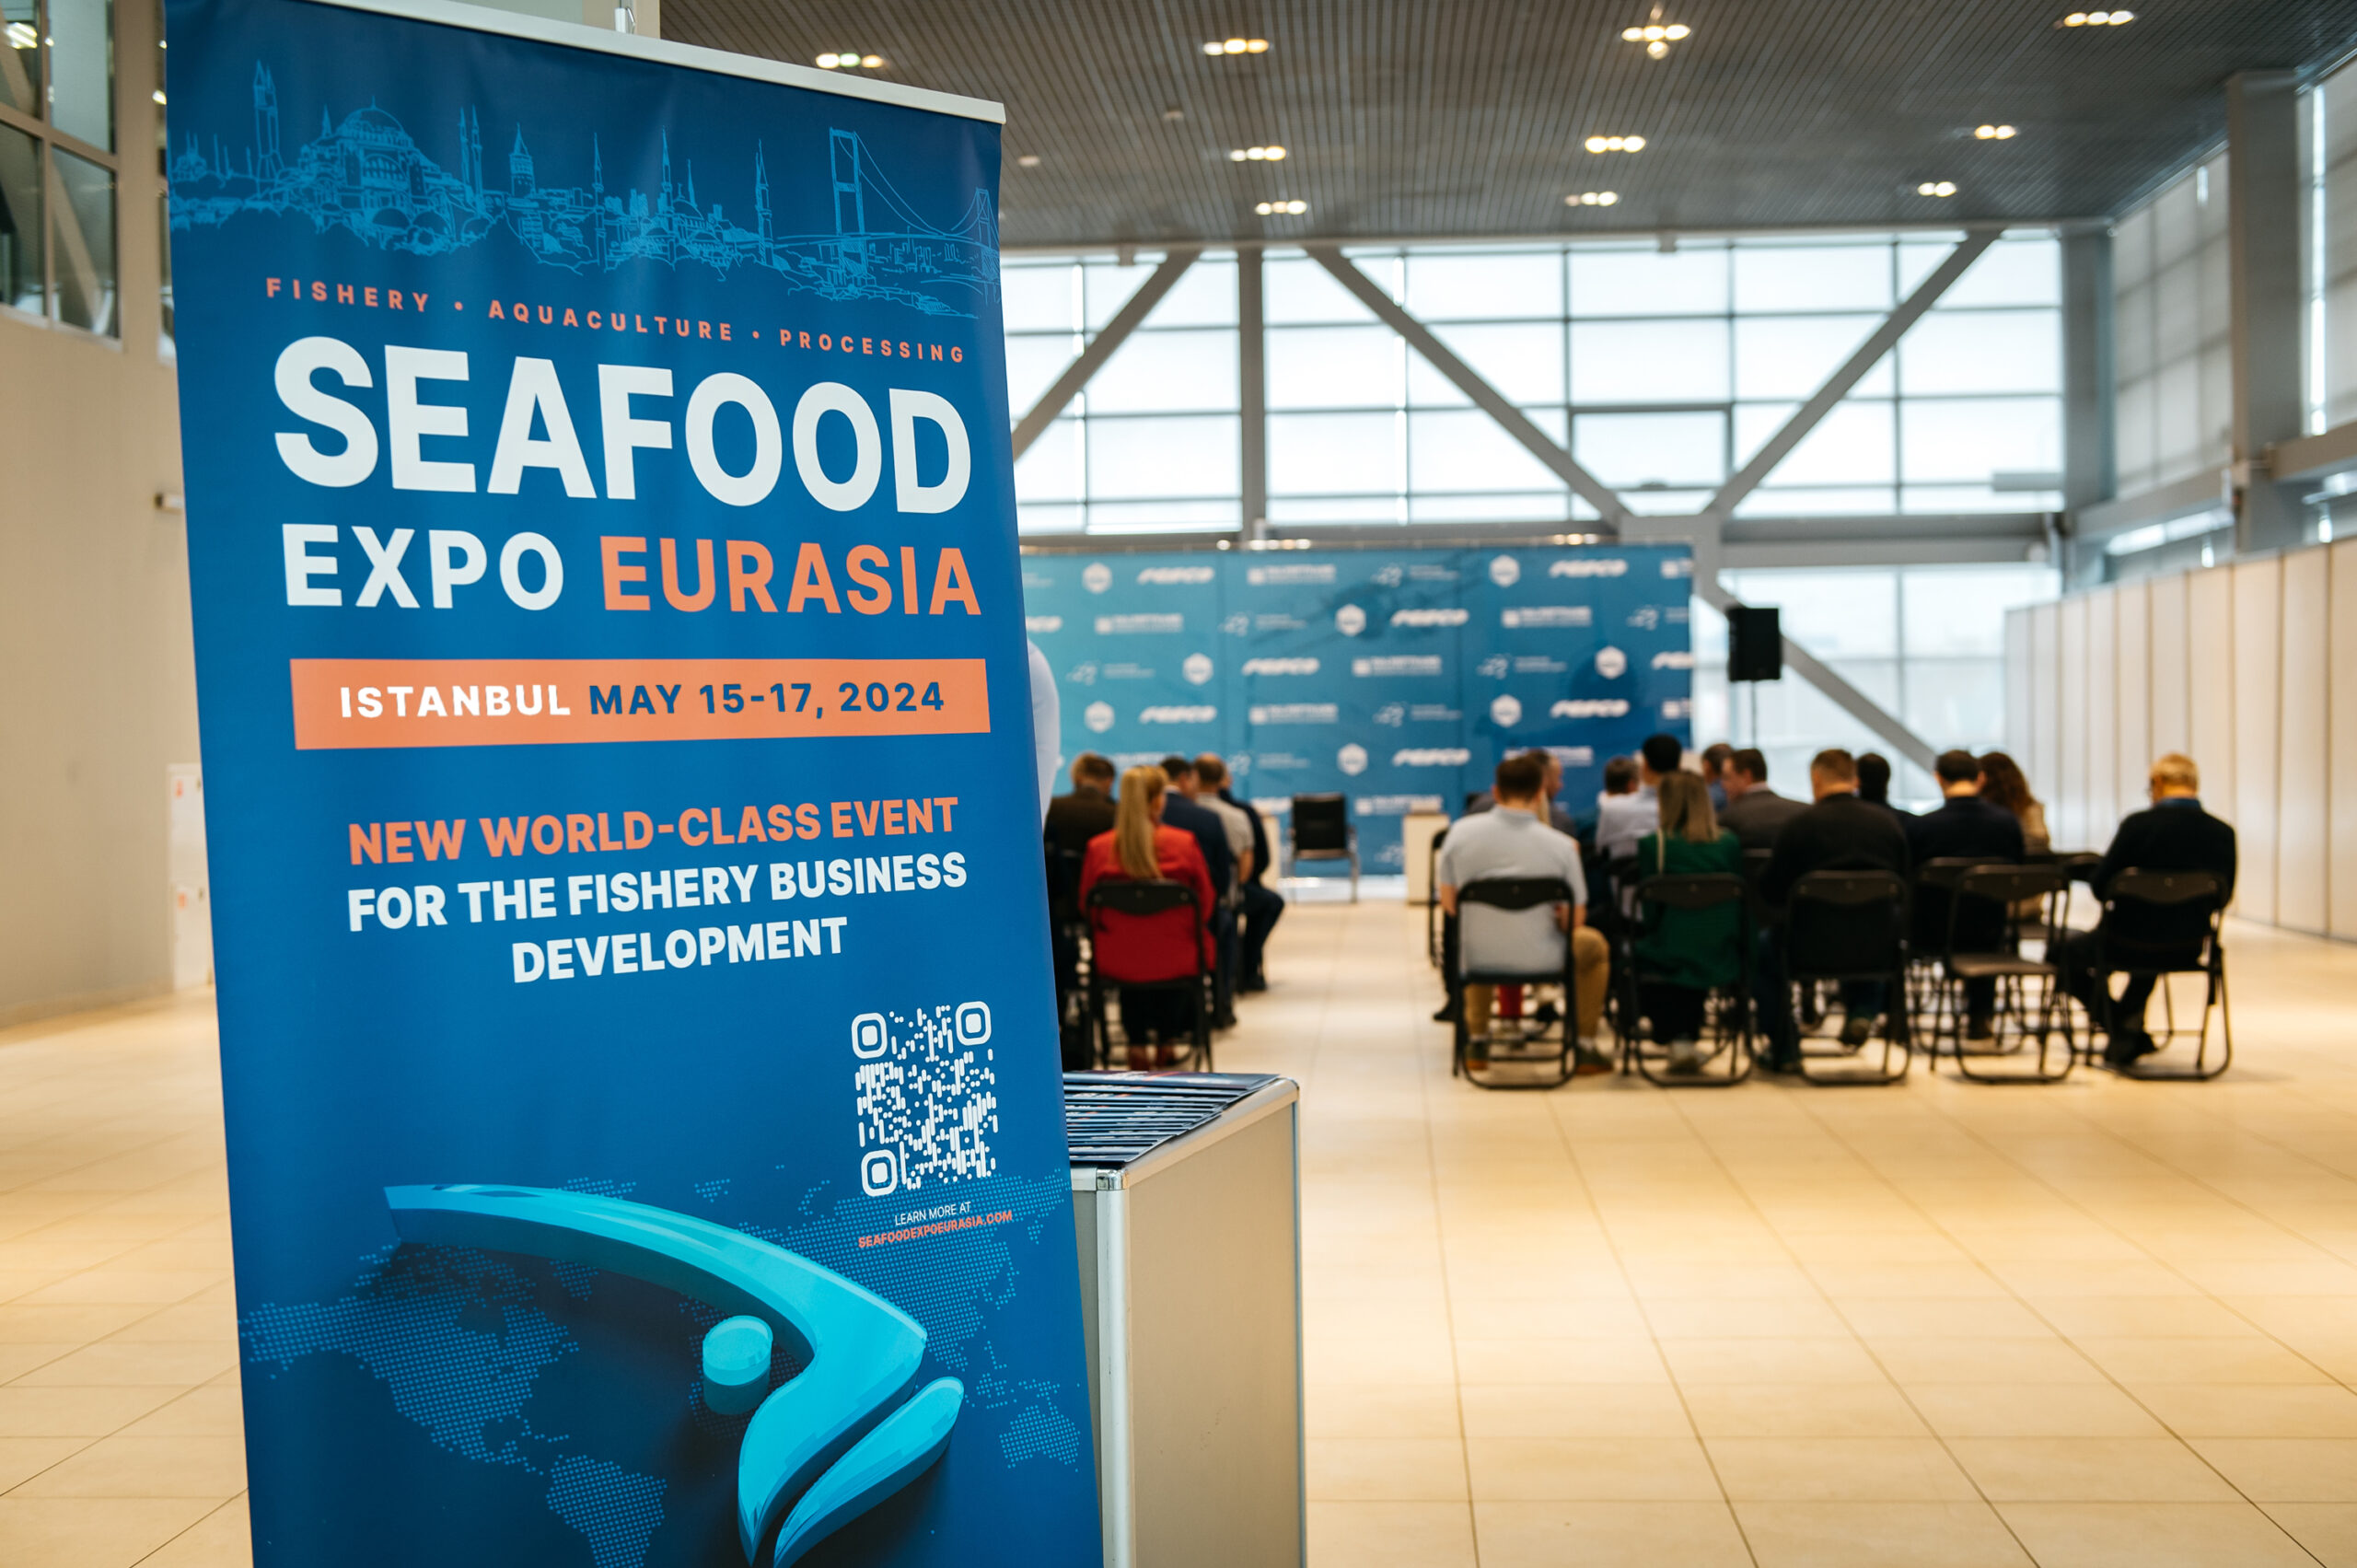 Seafood expo